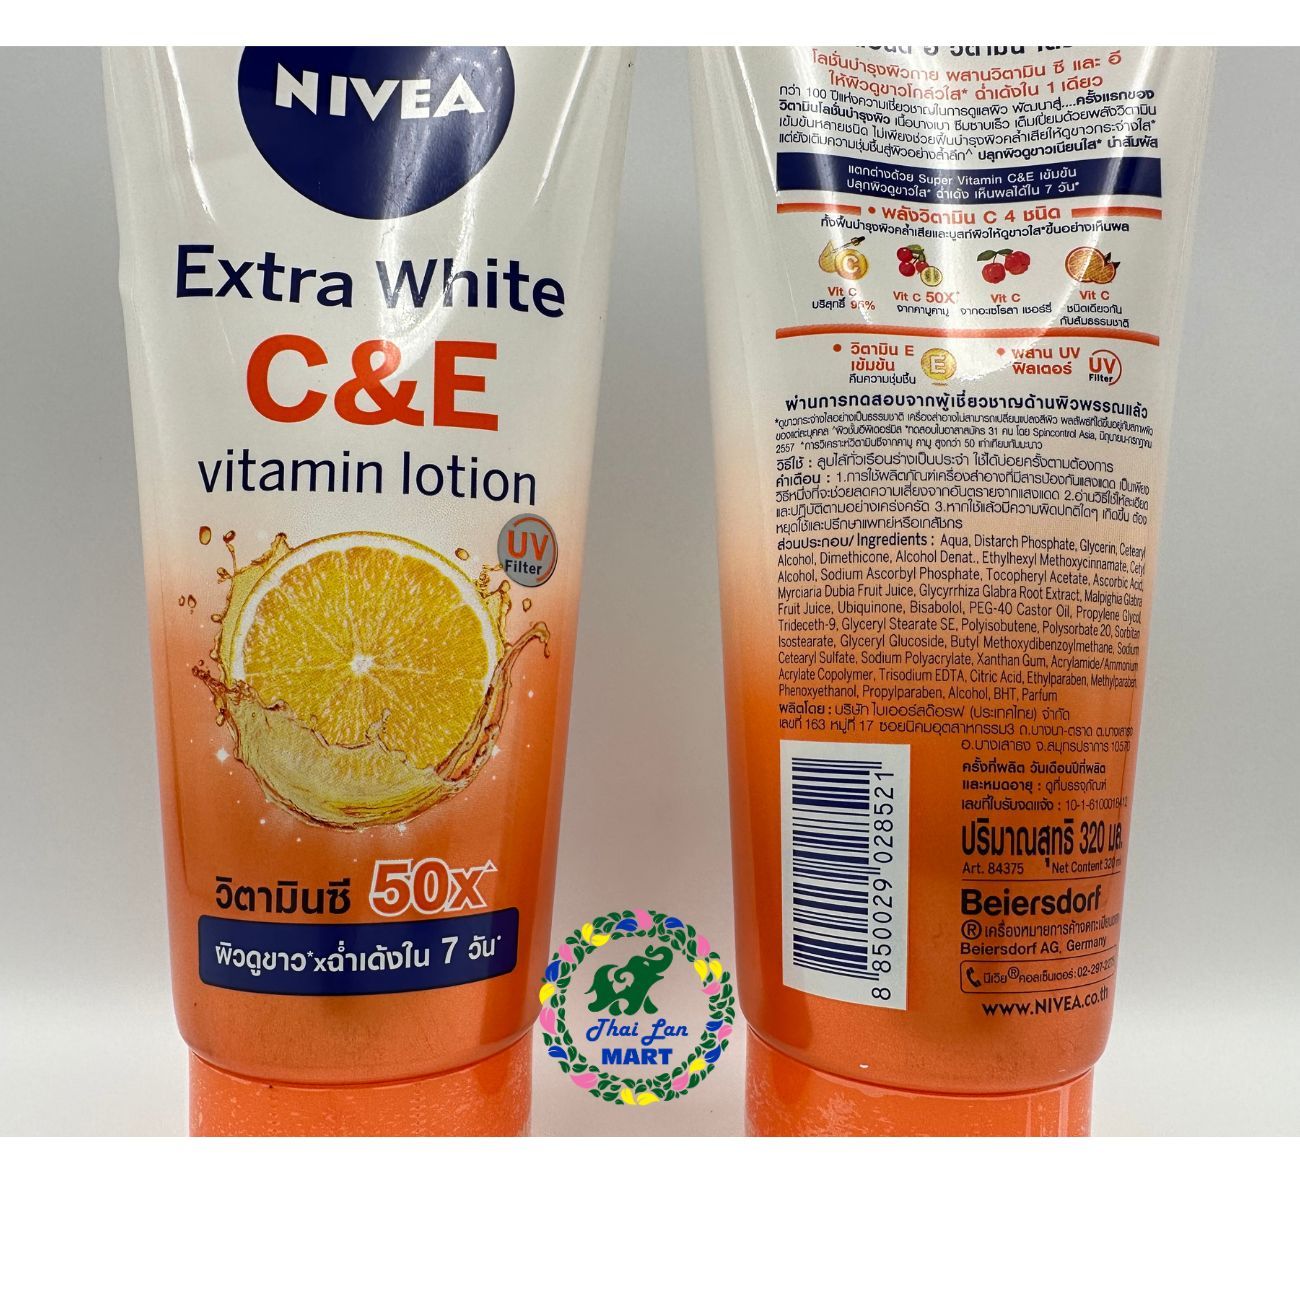  Sữa dưỡng thể nivea extra white c&e vitamin lotion 50x trắng da phục hồi chống nắng hàng nội địa chính hãng thái lan 320ml 